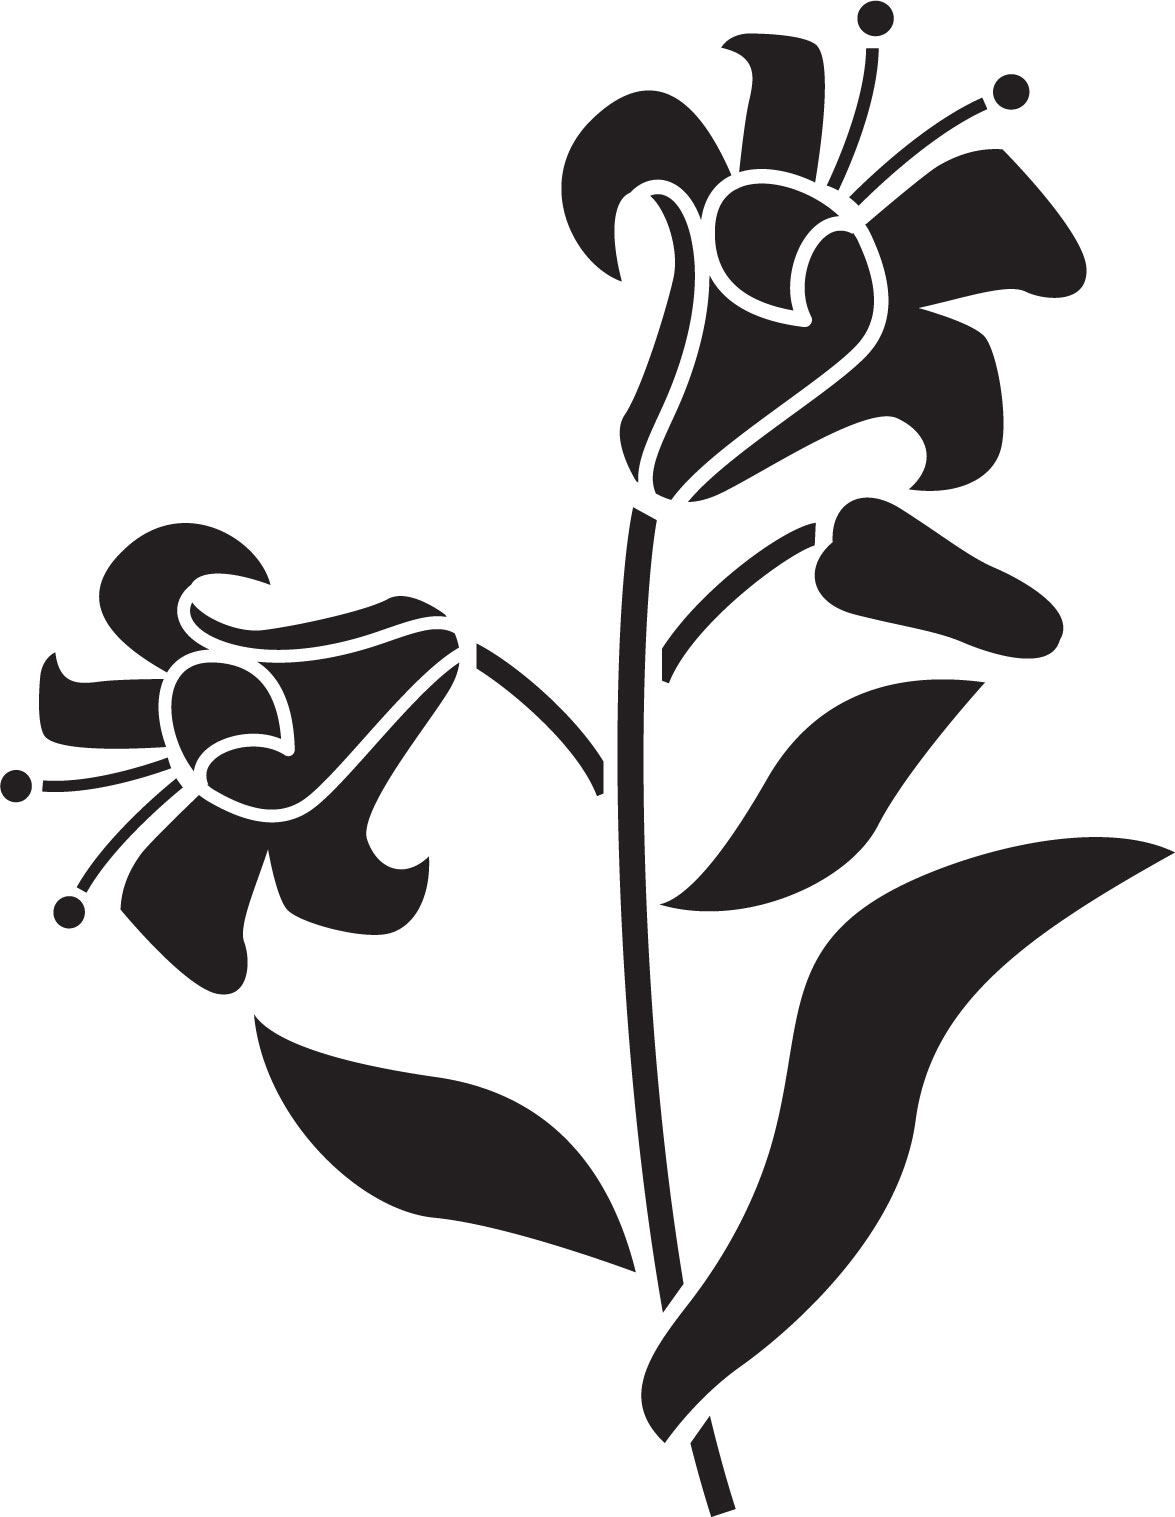 百合 ゆり の花の画像 イラスト フリー素材 No 103 白黒 葉 ユリ